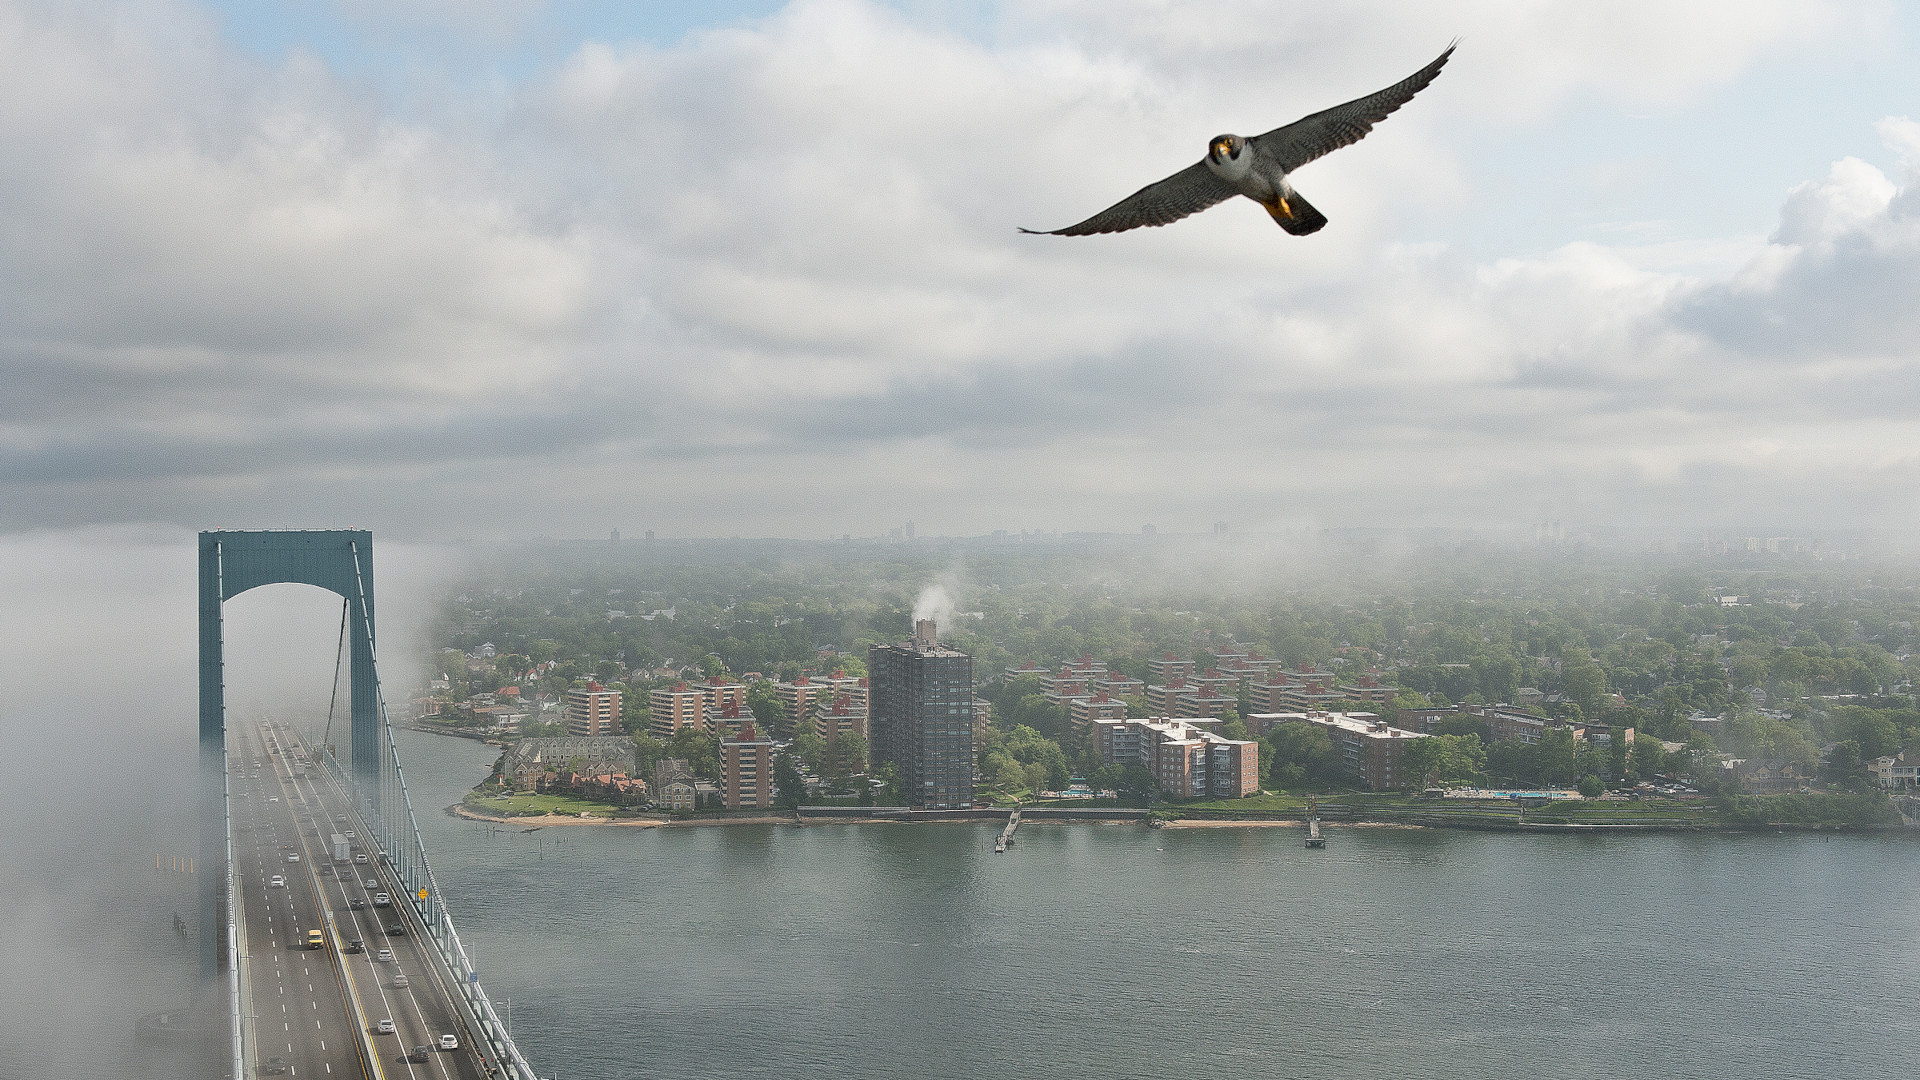 A peregrine falcon soars over a bridge and cityscape